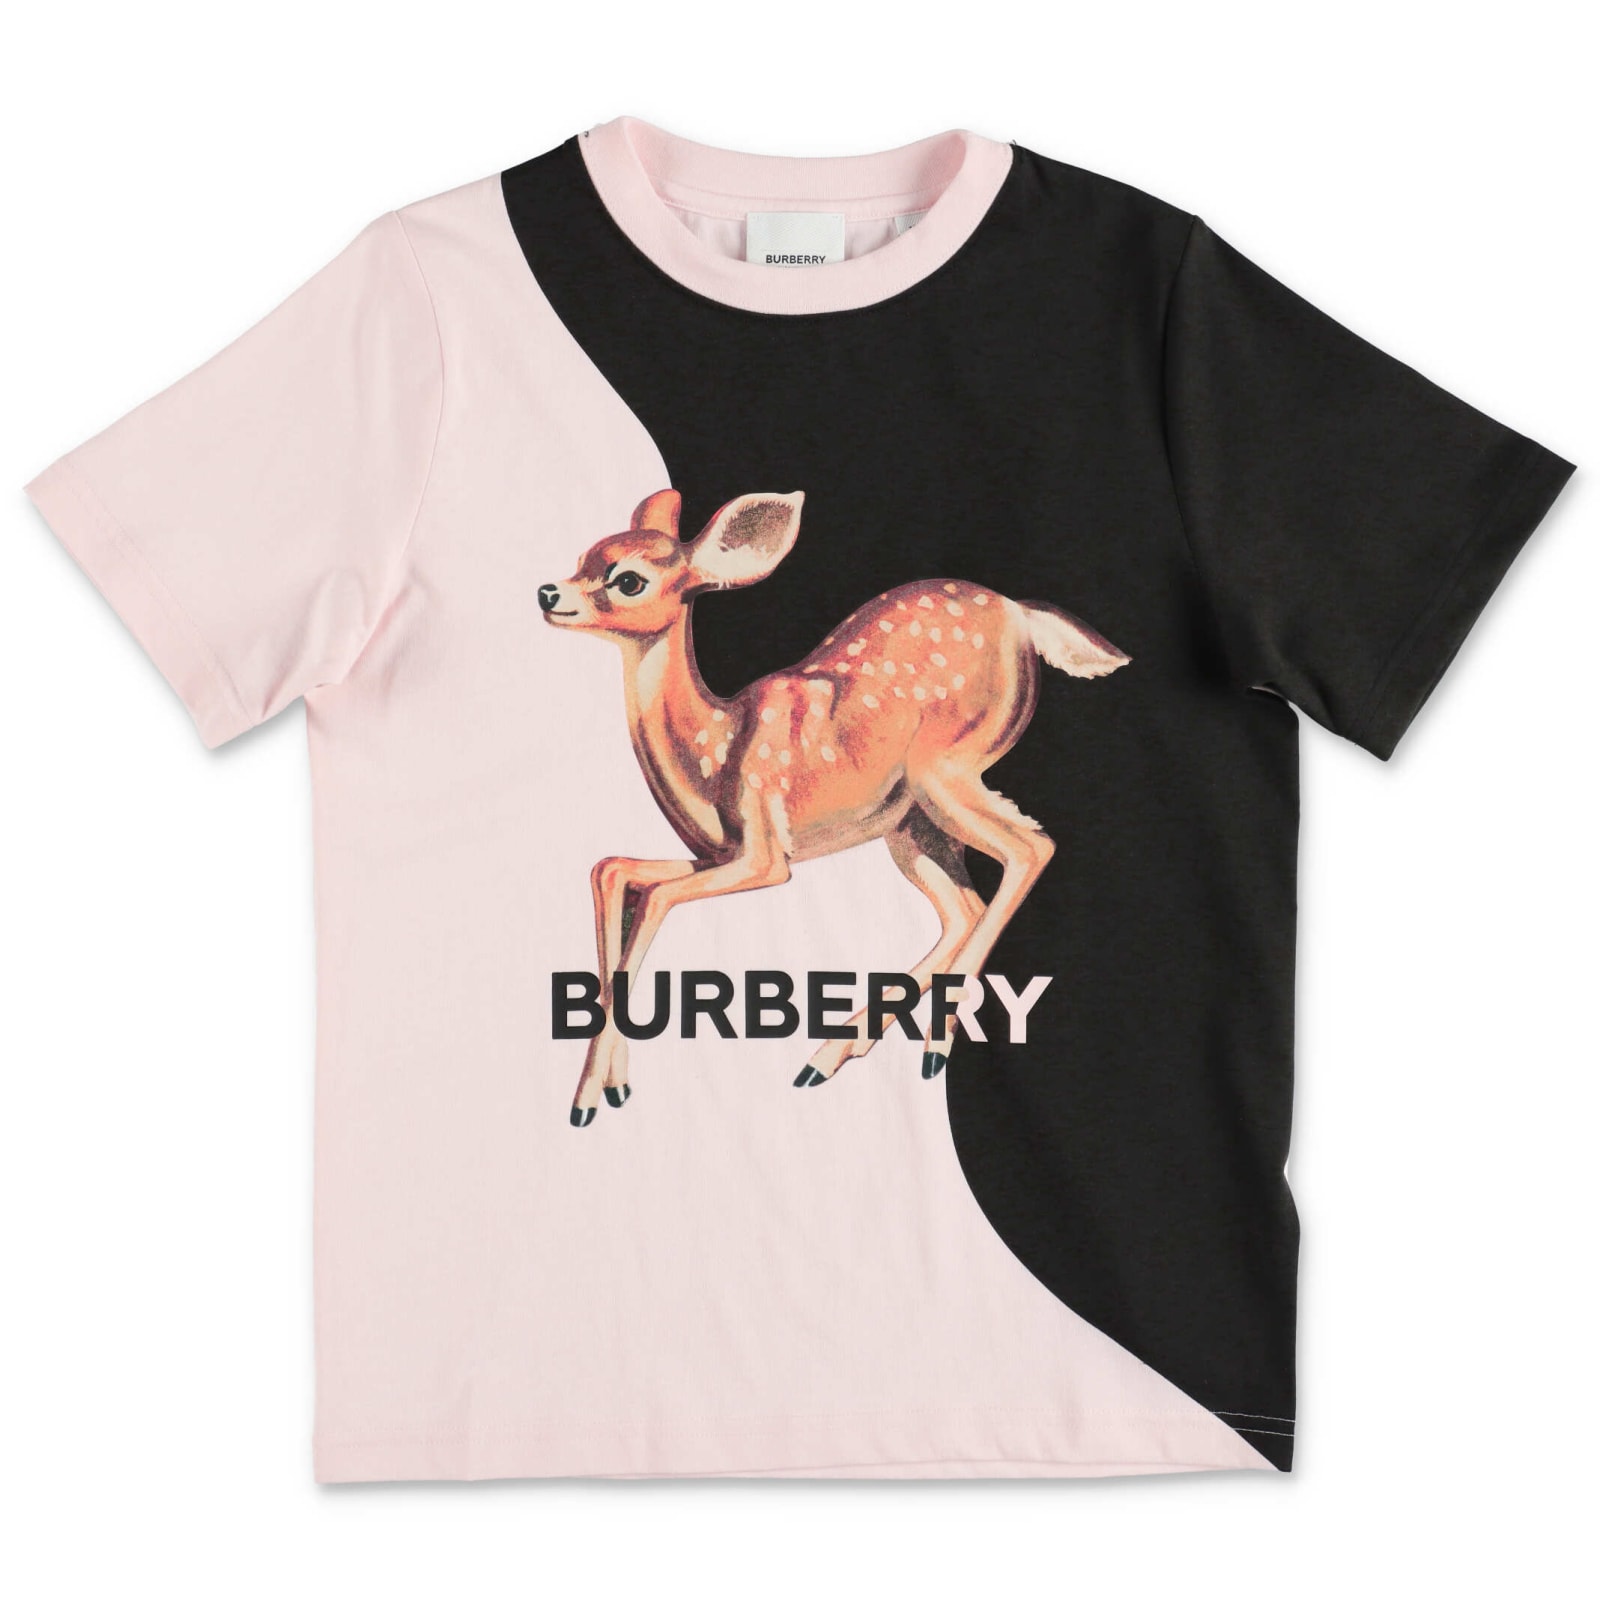 Burberry T-shirt Rosa E Nera In Jersey Di Cotone